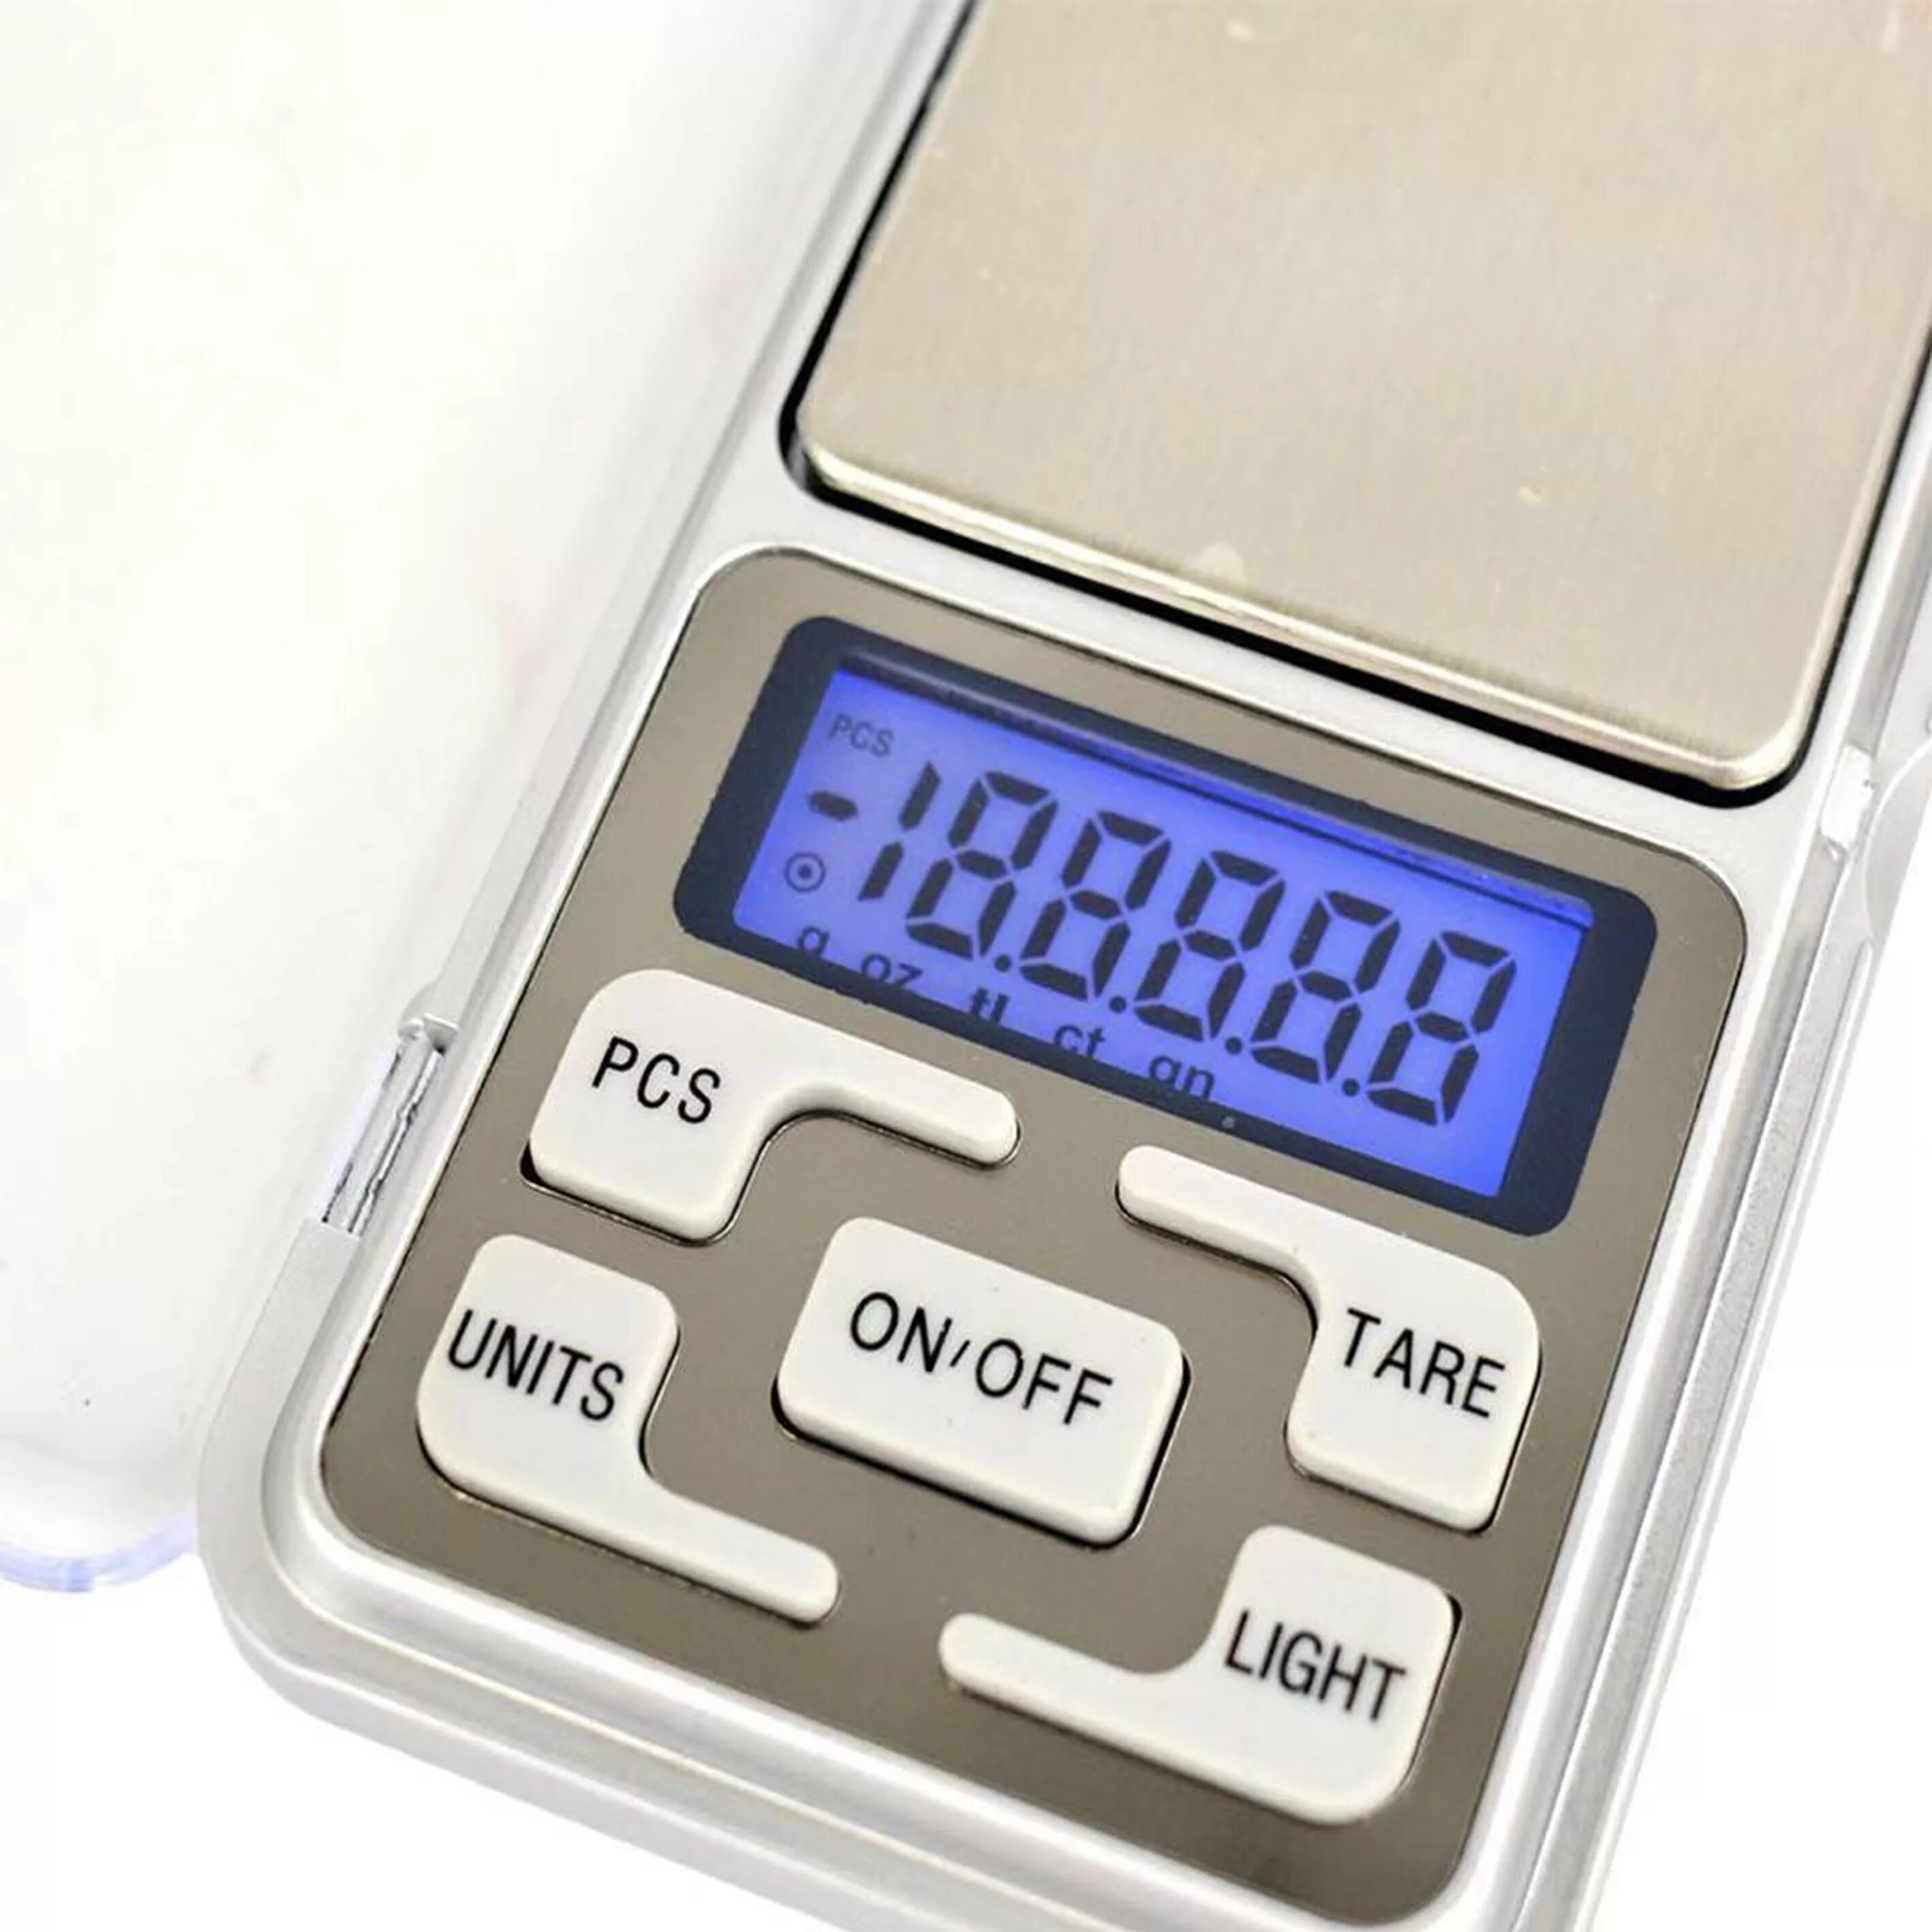 Весы точность 0 1. Весы портативные Эл. MH-500 Pocket Scale 500гр точность 0,1гр. Pocket Scale MH-500 весы ювелирные электронные карманные 500 г/0,1 г. Весы электронные, 500g х 0,1 г. Электронные весы Mini 200g.